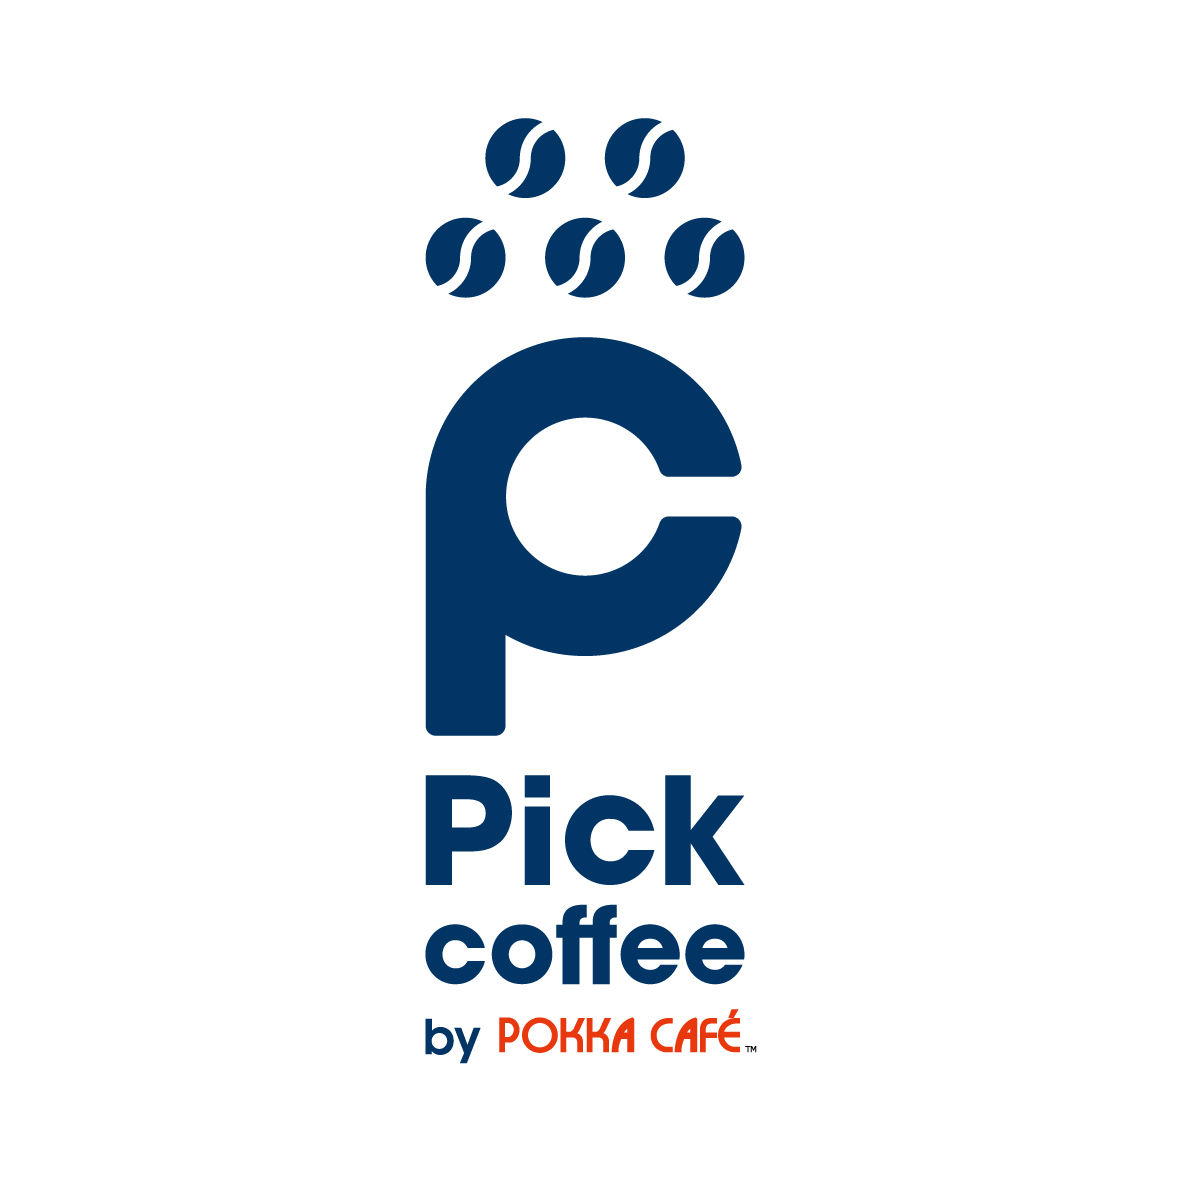 Pick Coffee by Pokka Cafe